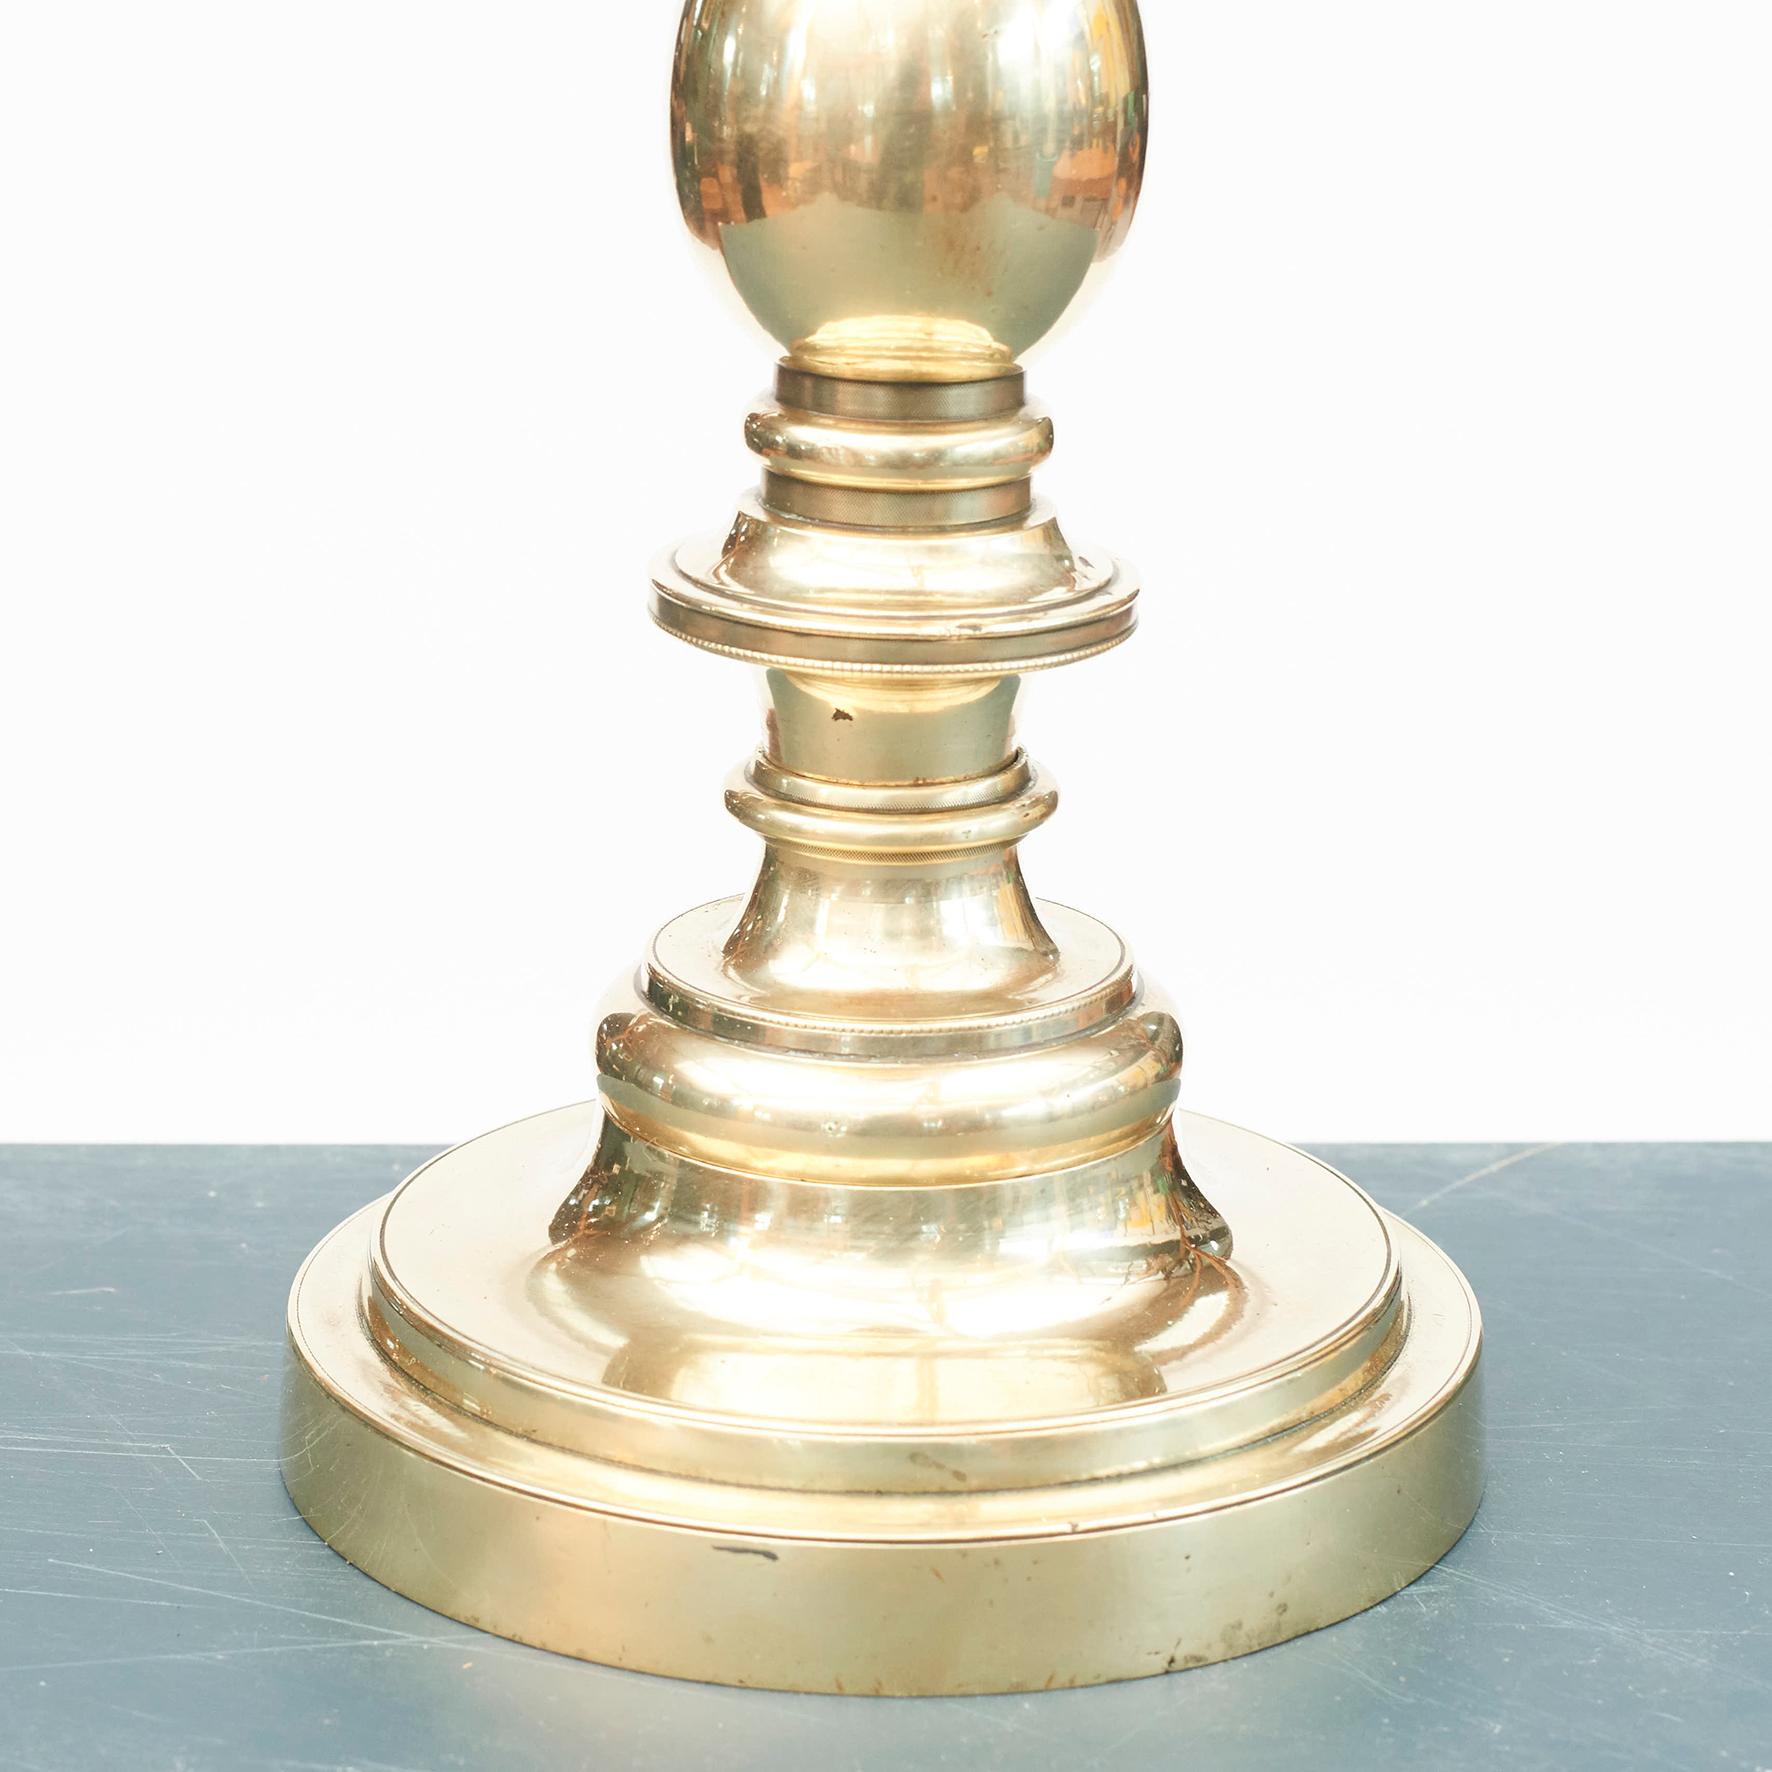 Tischlampe aus Messing. Dänemark, 1920-1930.
Wunderschön gestaltet und verarbeitet. Original oben. 
Maße: Höhe der Skulptur (bis zum Sockel) 36 cm, 14,17 Zoll. Gesamthöhe 62 cm, 24,41 Zoll.

Lampenschirm nicht enthalten.